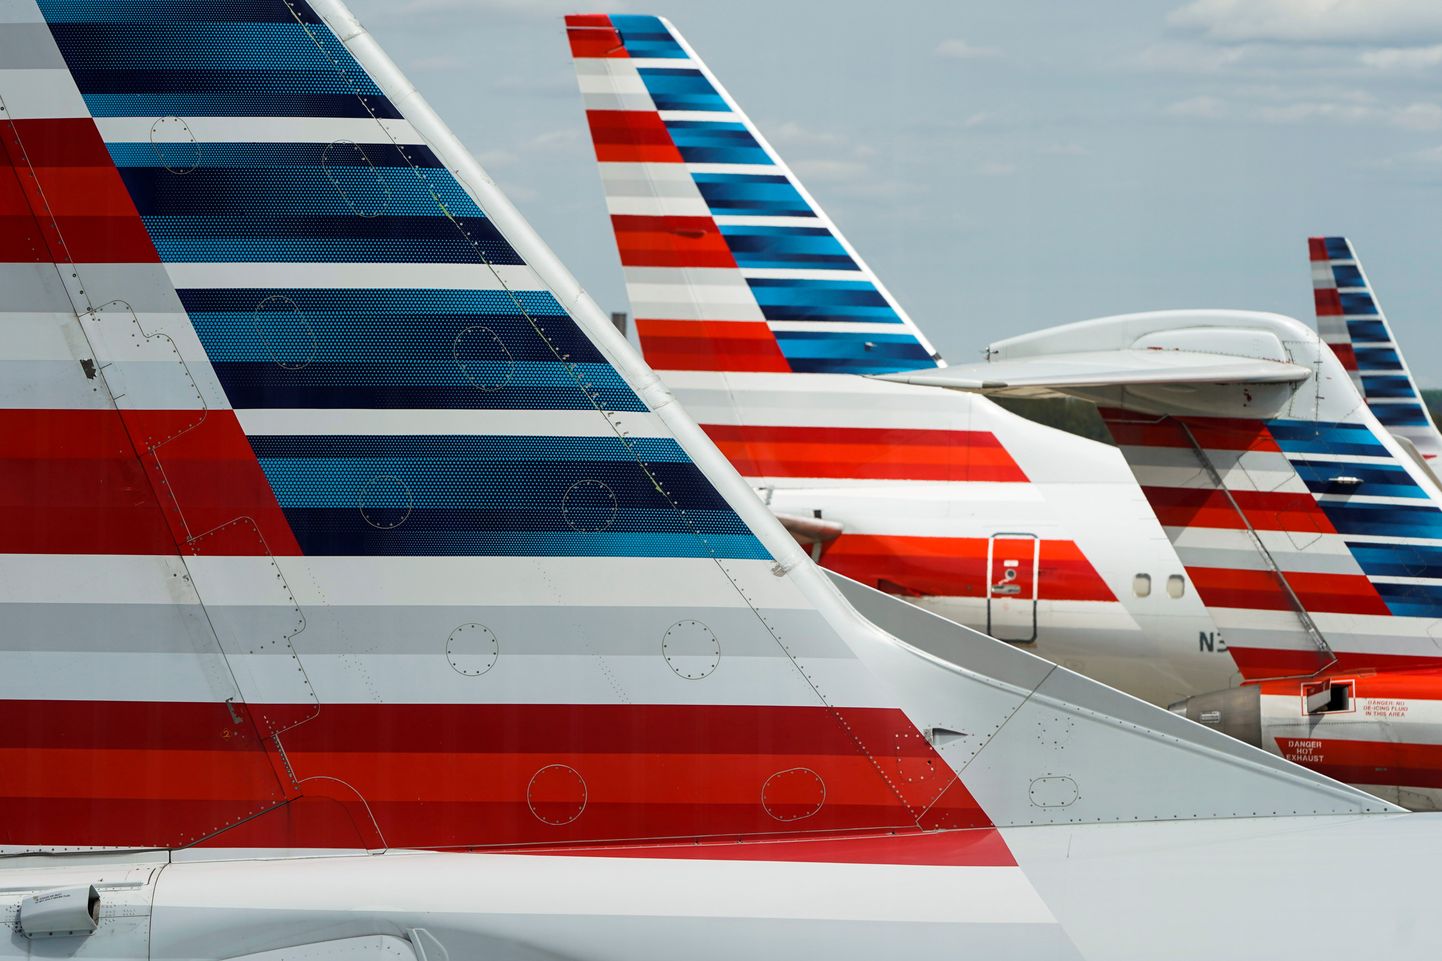 American Airlinesi lennukid pargivad Washingtoni lennuväljal.